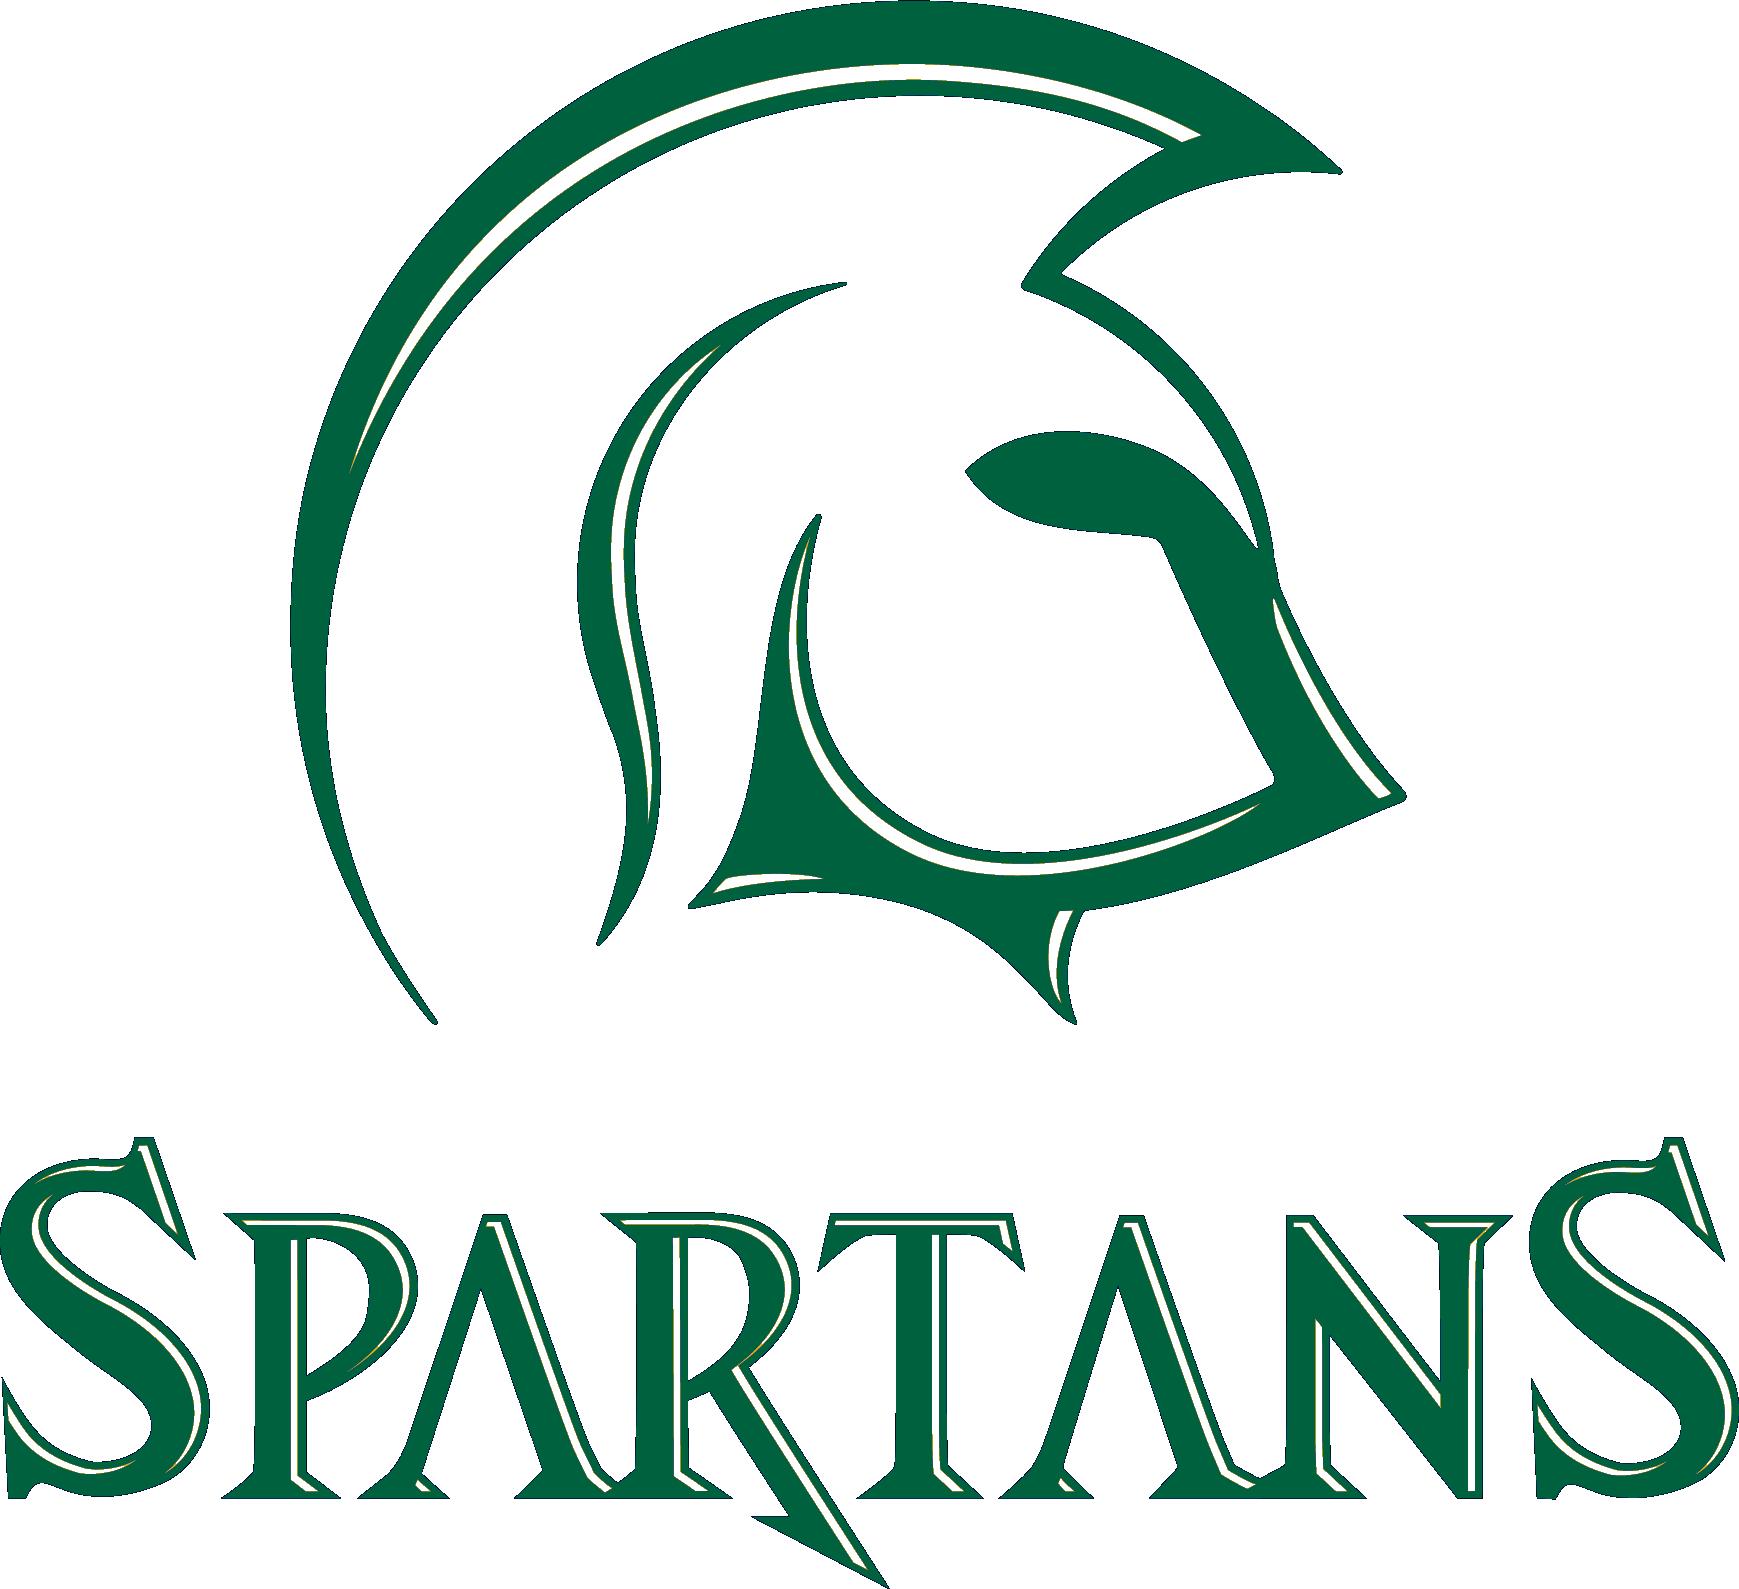 Msu spartan logo clip art